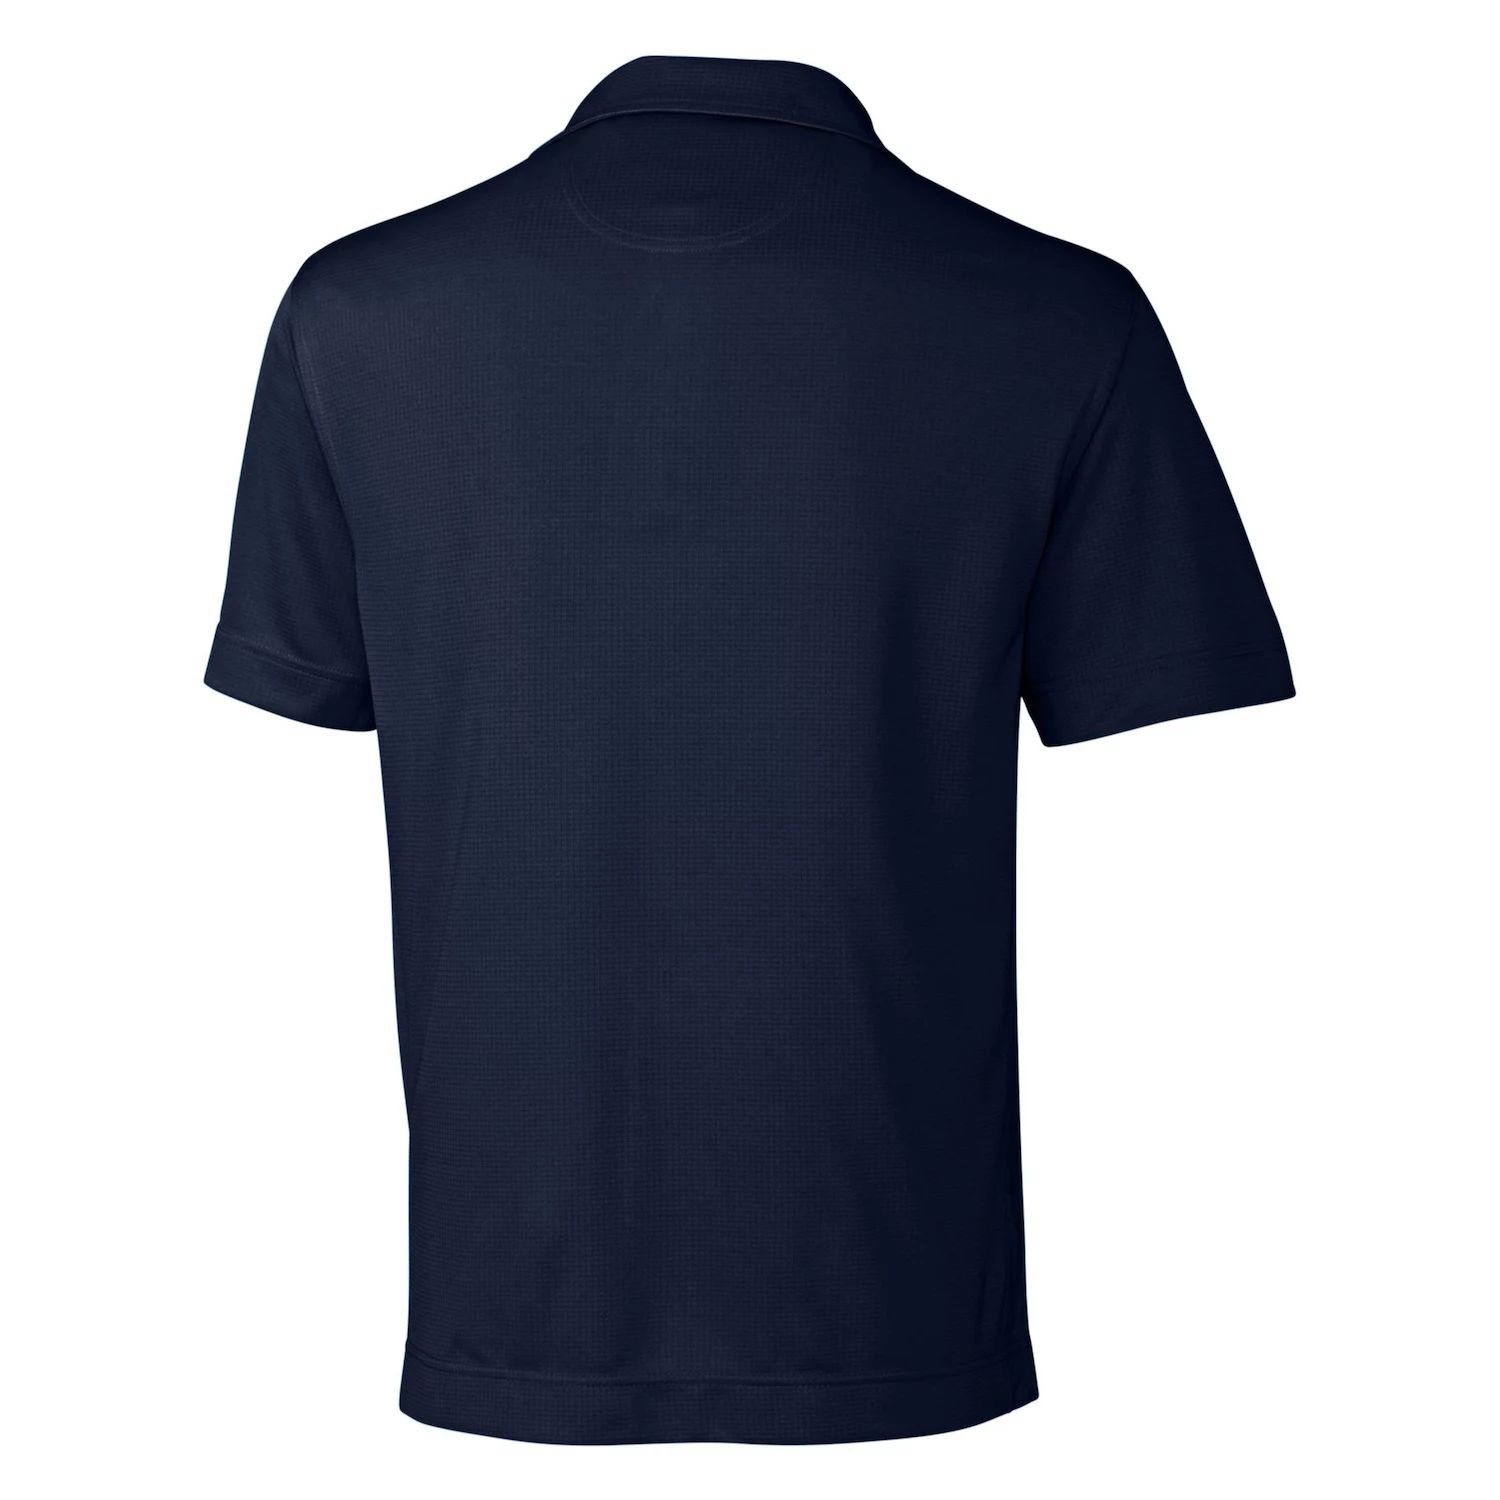 Однотонная мужская футболка-поло CB Drytec Жанр, текстурированная, большая и высокая Cutter & Buck, темно-синий текстурированная однотонная мужская футболка поло cb drytec genre cutter